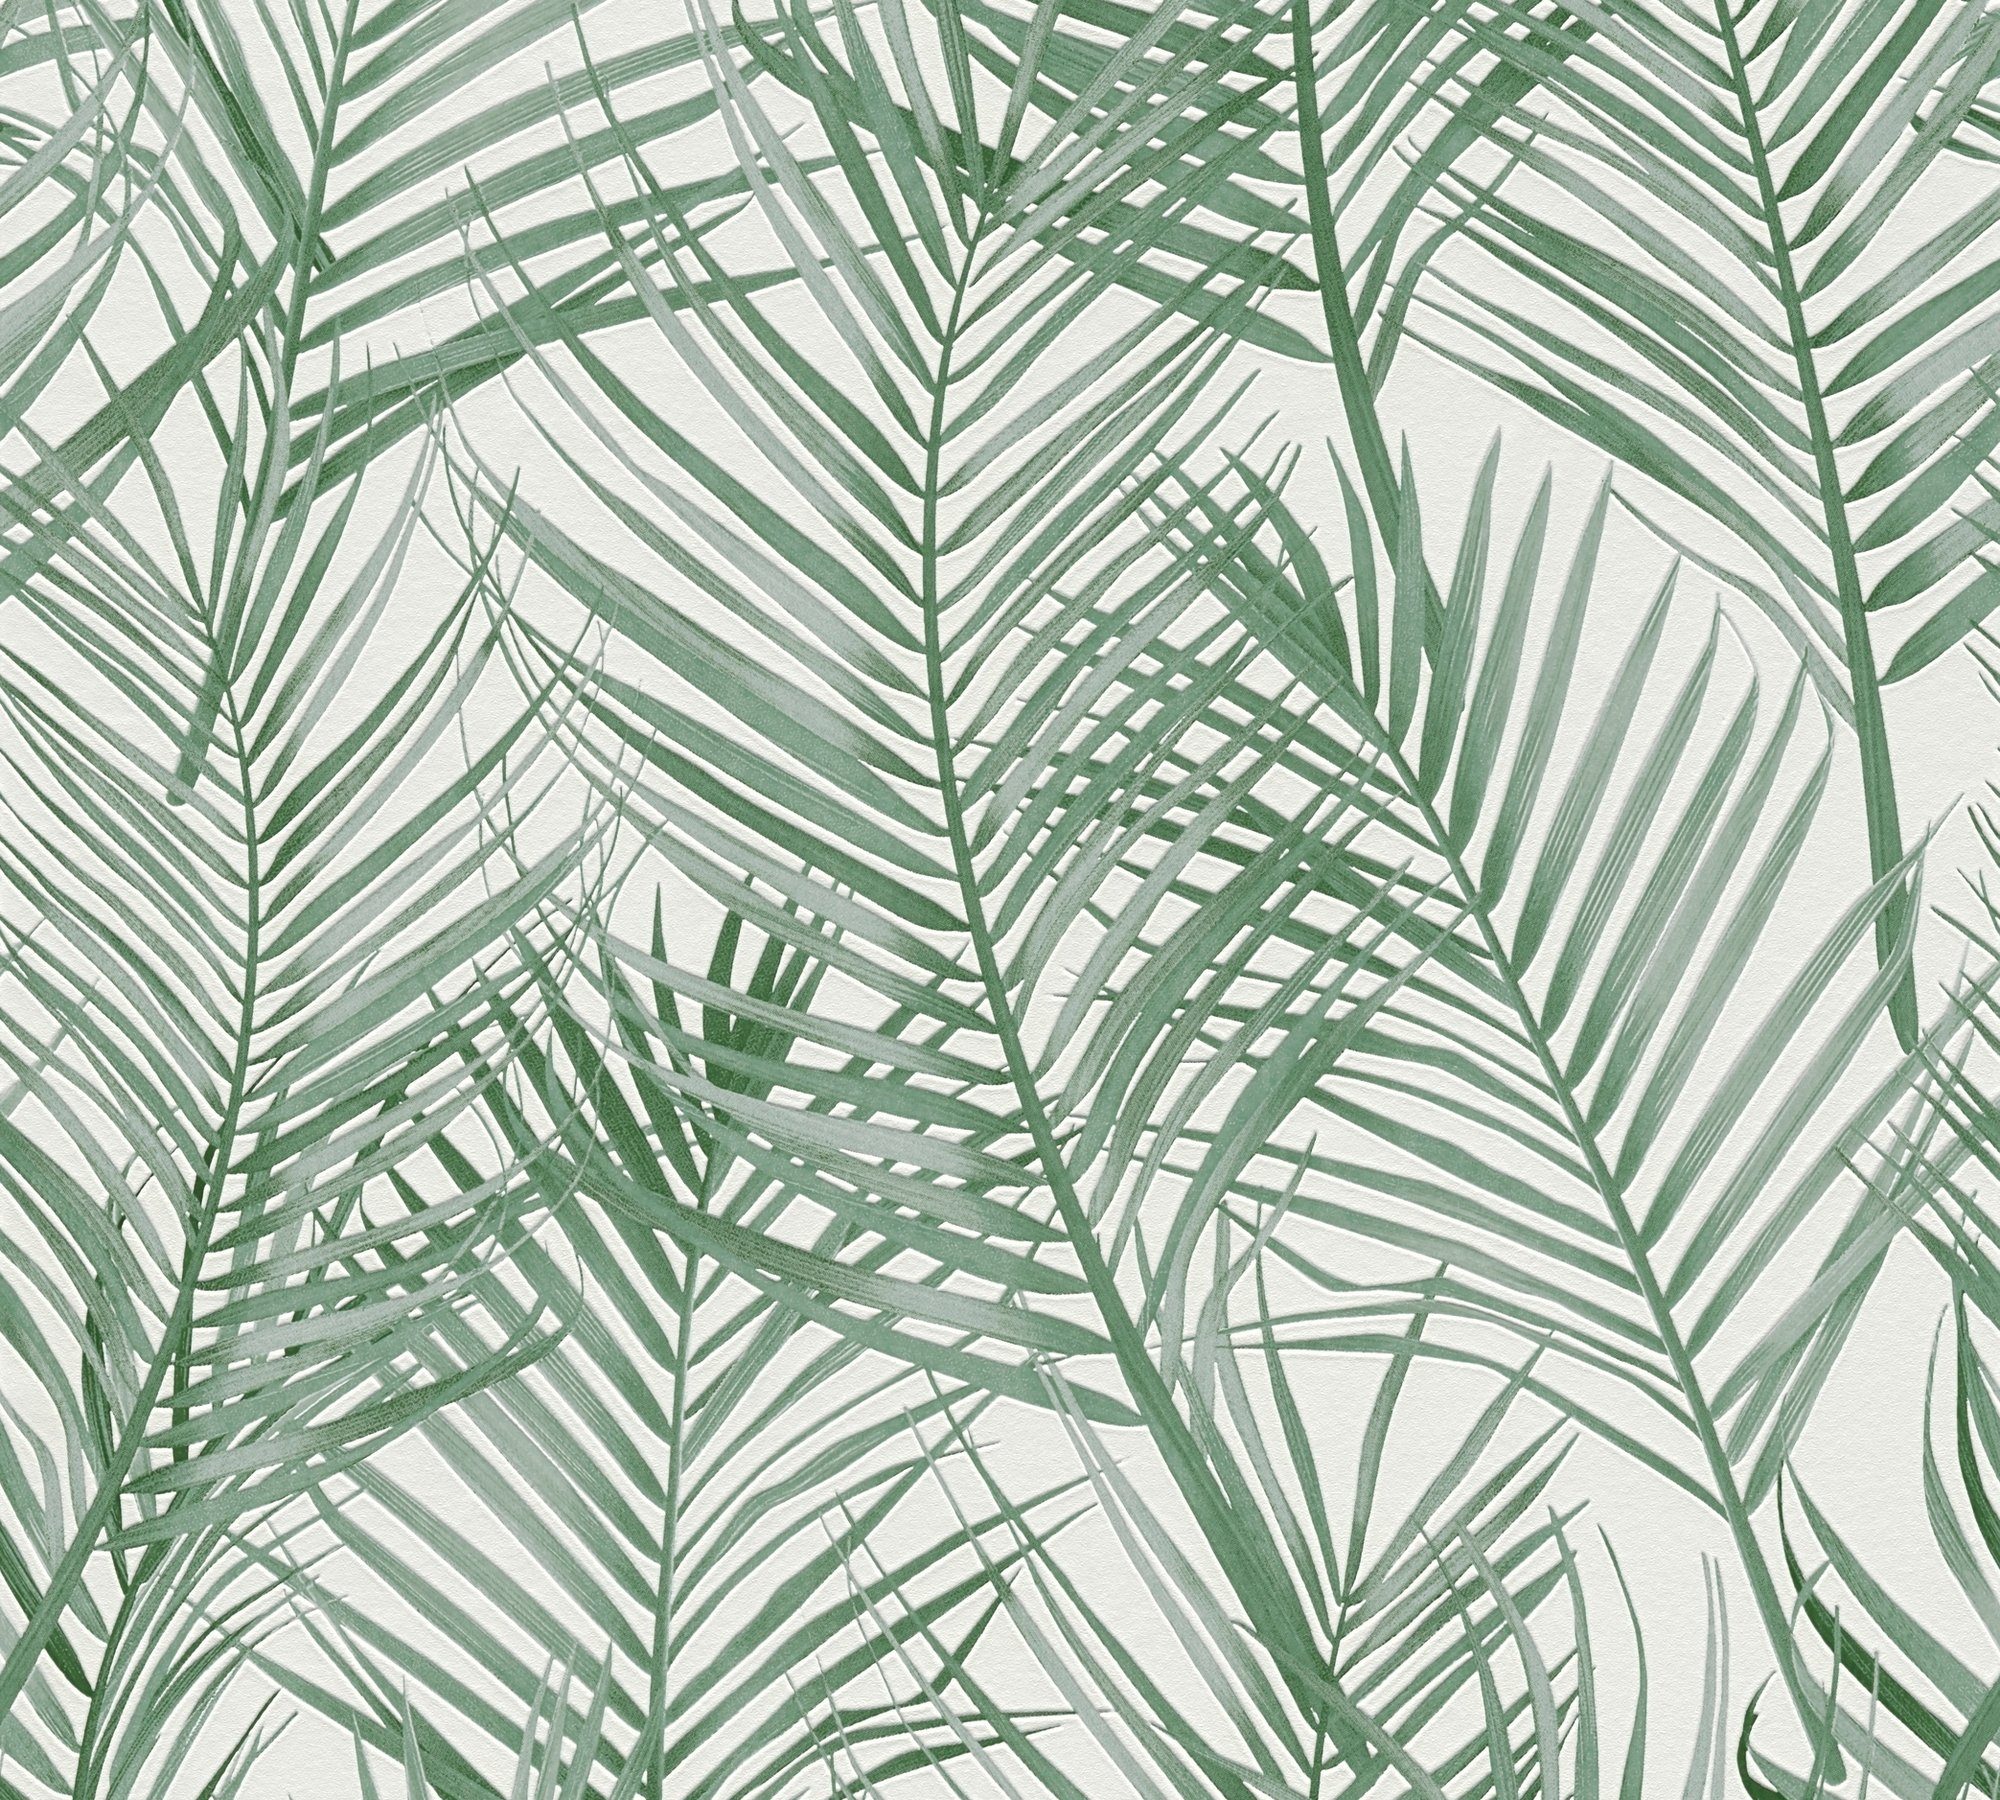 Création (1 2 Vliestapete St), blätter matt, pflanzen strukturiert, strukturiert Grün,Weiß Grün A.S. Farntapete, Blättertapete Floral Attractive